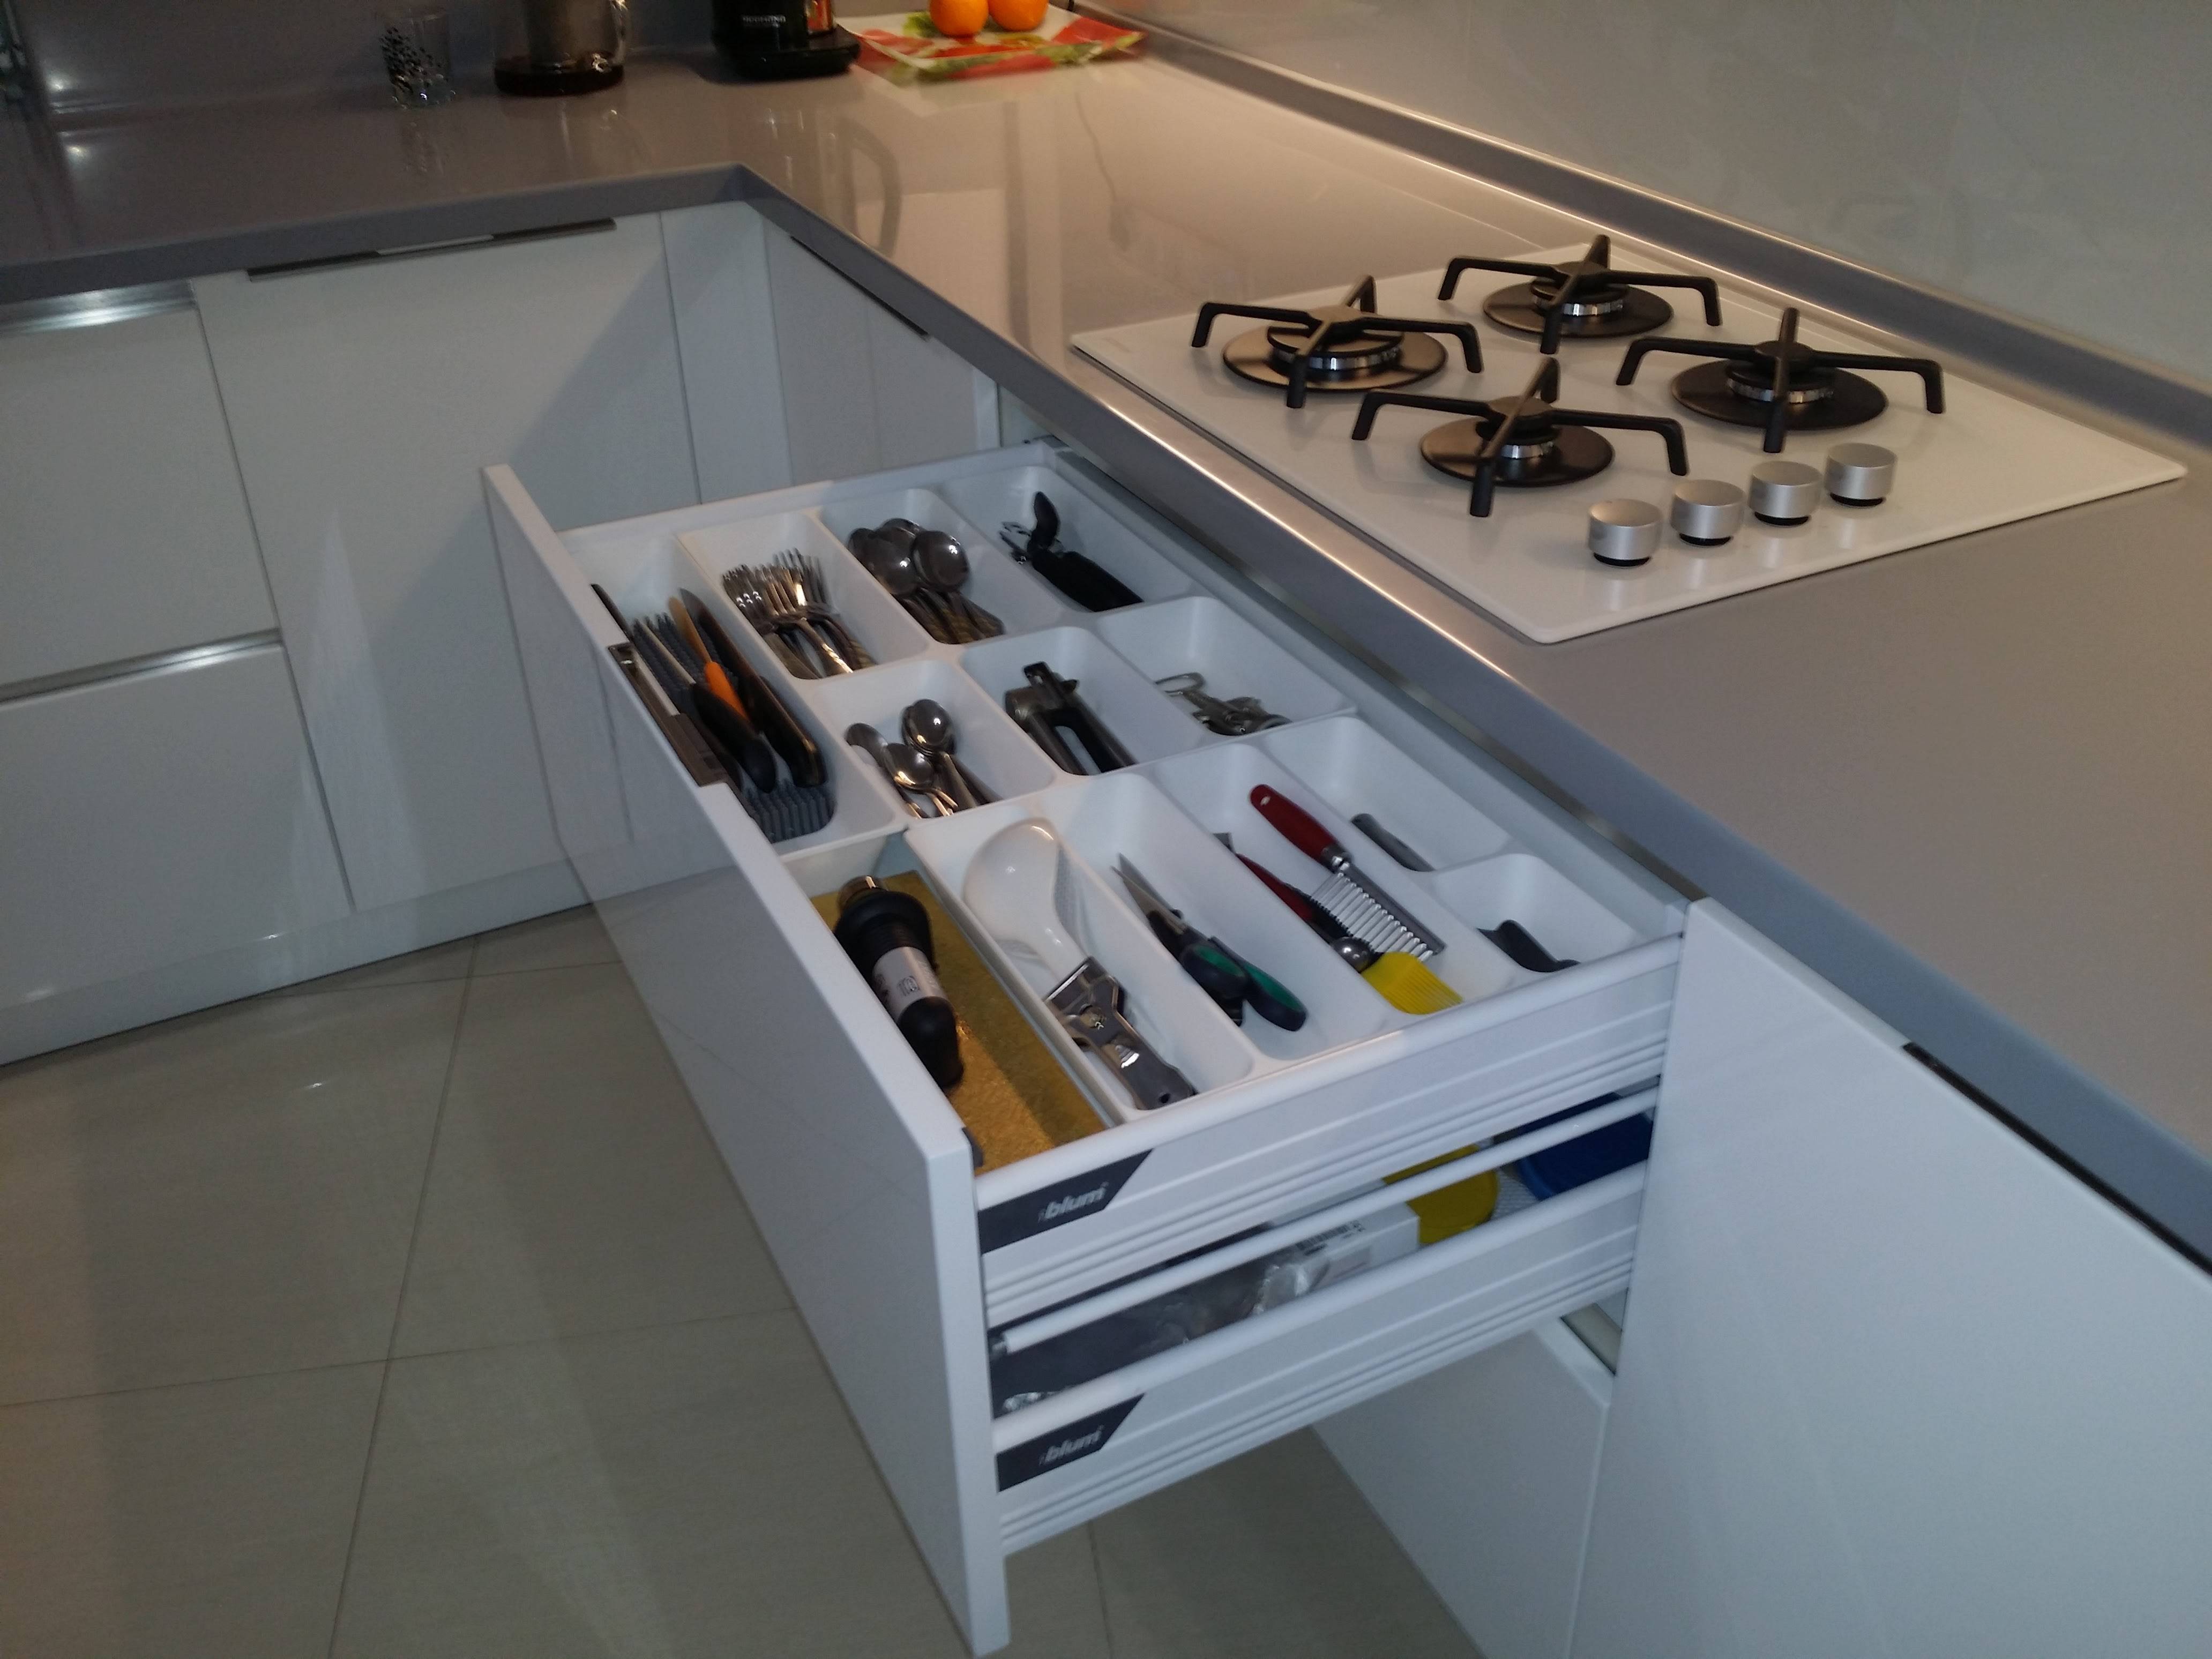 Обзор мебельной фурнитуры blum, подъемных и выдвижных механизмов для кухонь